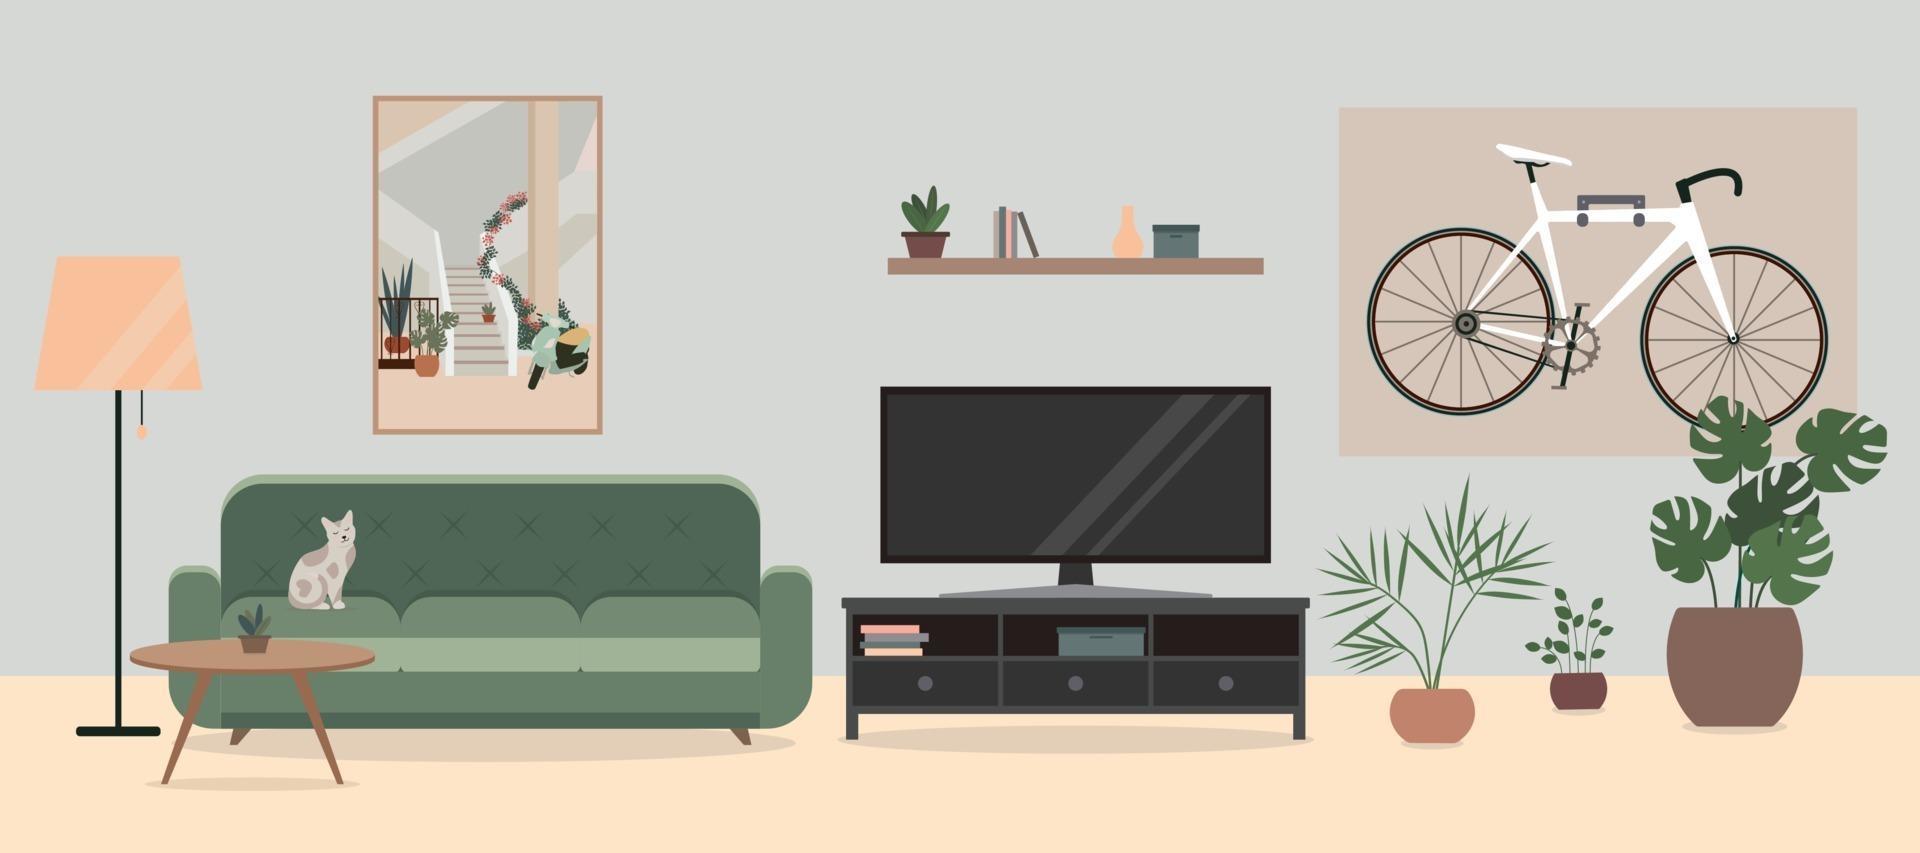 acogedor salón interior con tv, sofá, flores en macetas y una bicicleta. bicicleta colgada en la pared de la sala de estar. vector